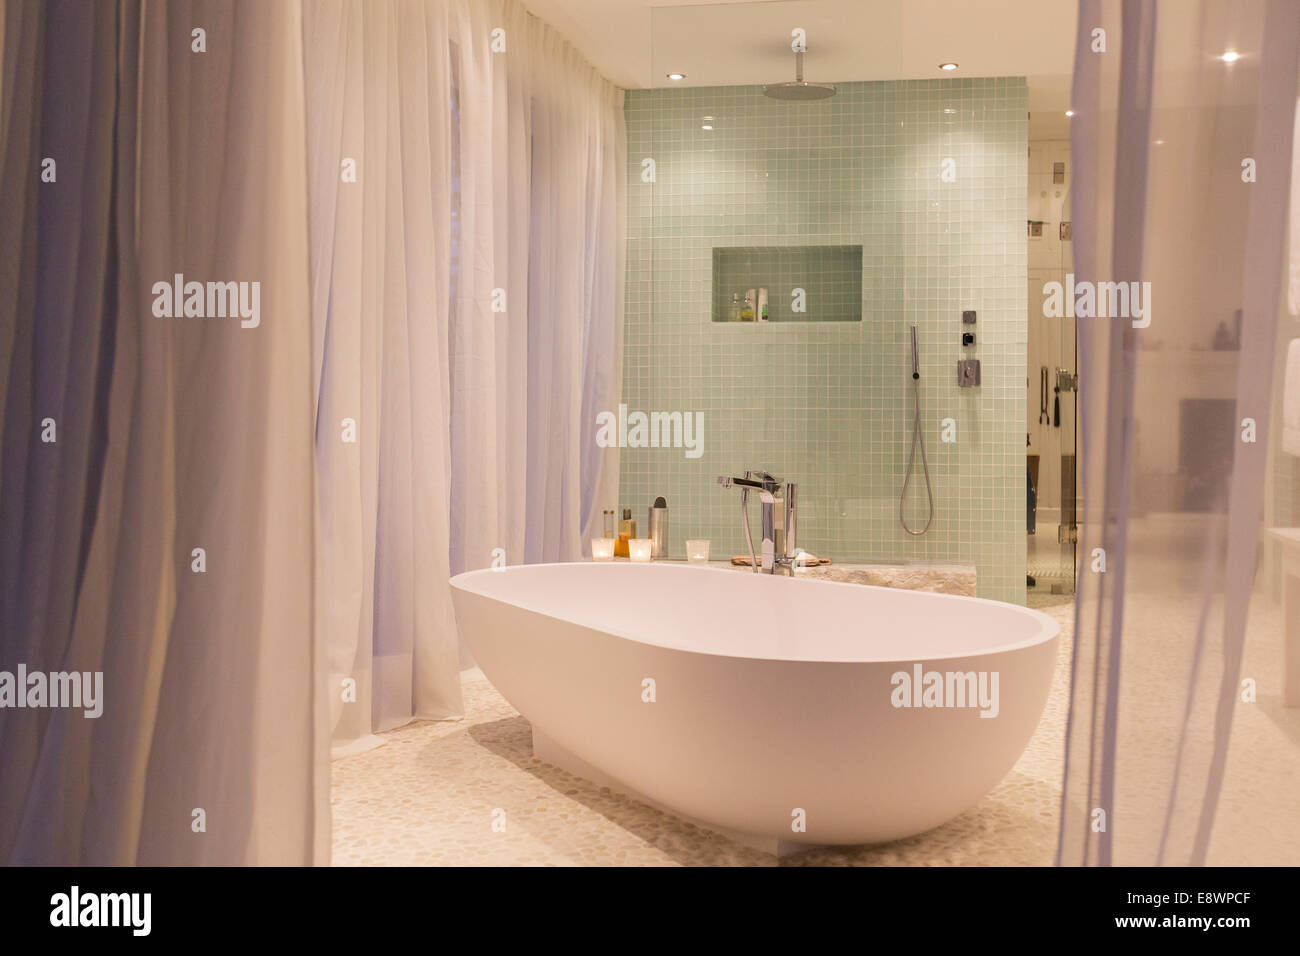 Badewanne und Dusche im modernen Badezimmer Stockfoto